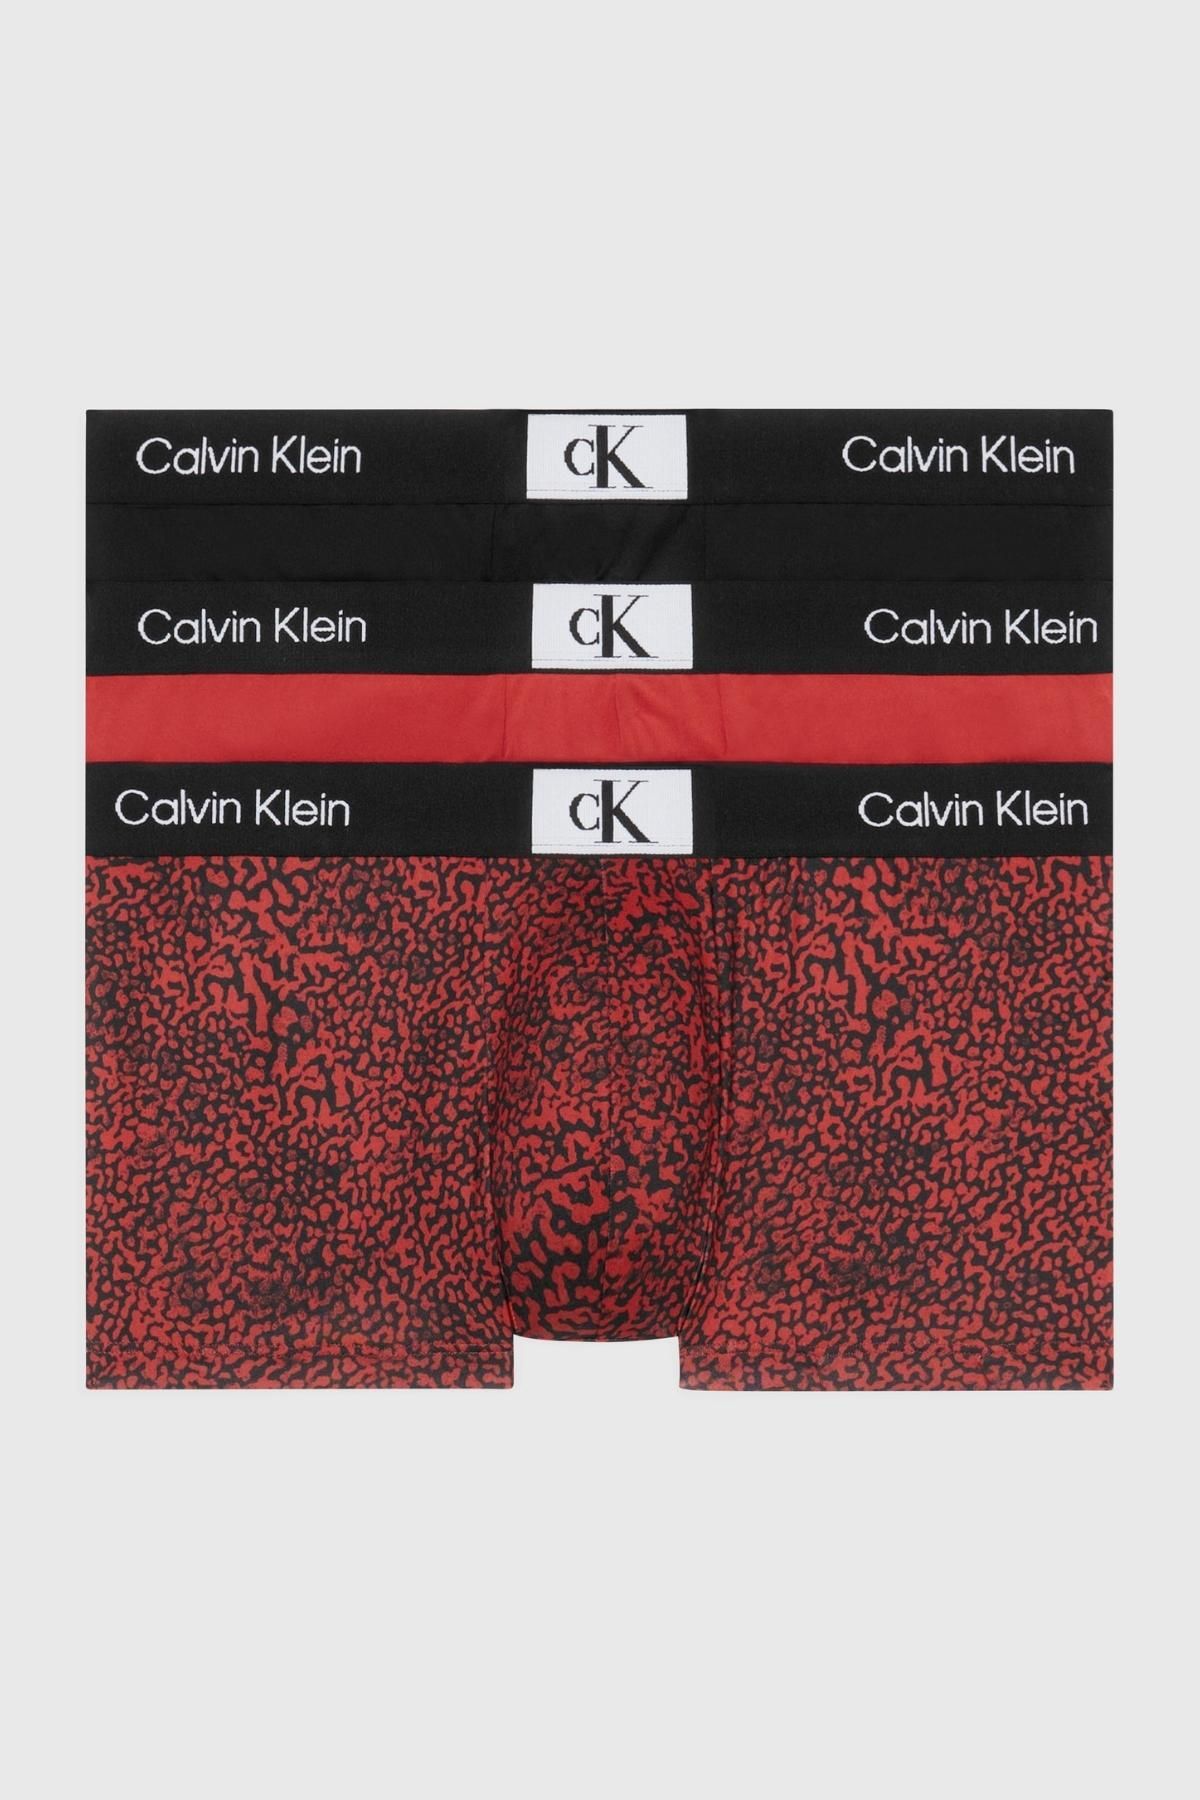 Calvin Klein Erkek Marka Logolu Elastik Bantlı Günlük Kullanıma Uygun Siyah-kırmızı-kırmızı Boxer 000nb3532e-hzy